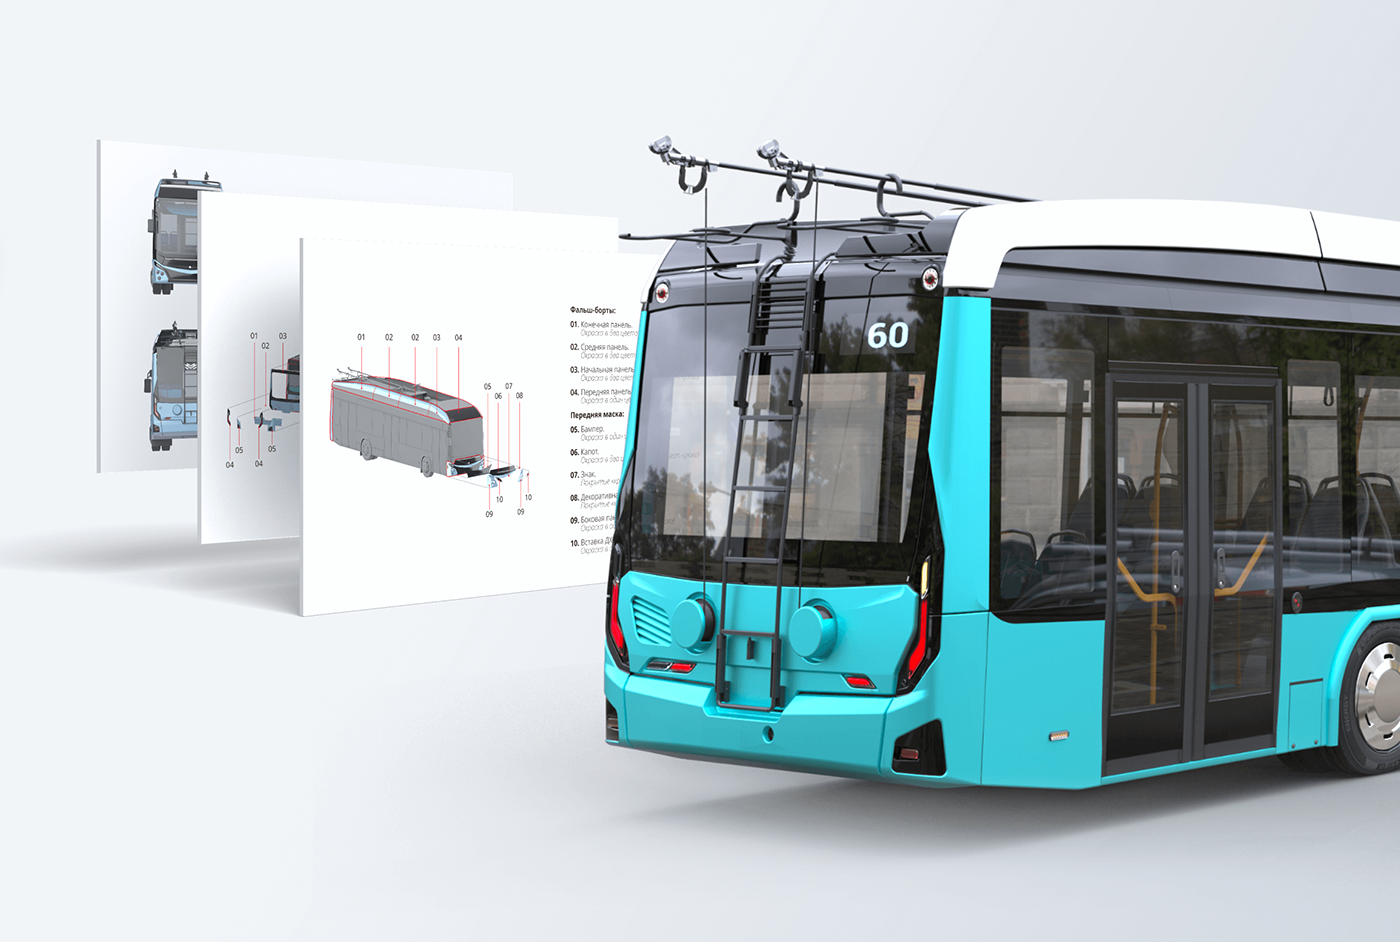 design Engineering  industrial design  product design  sketch Transportation Design bus transportation public transportation industrial